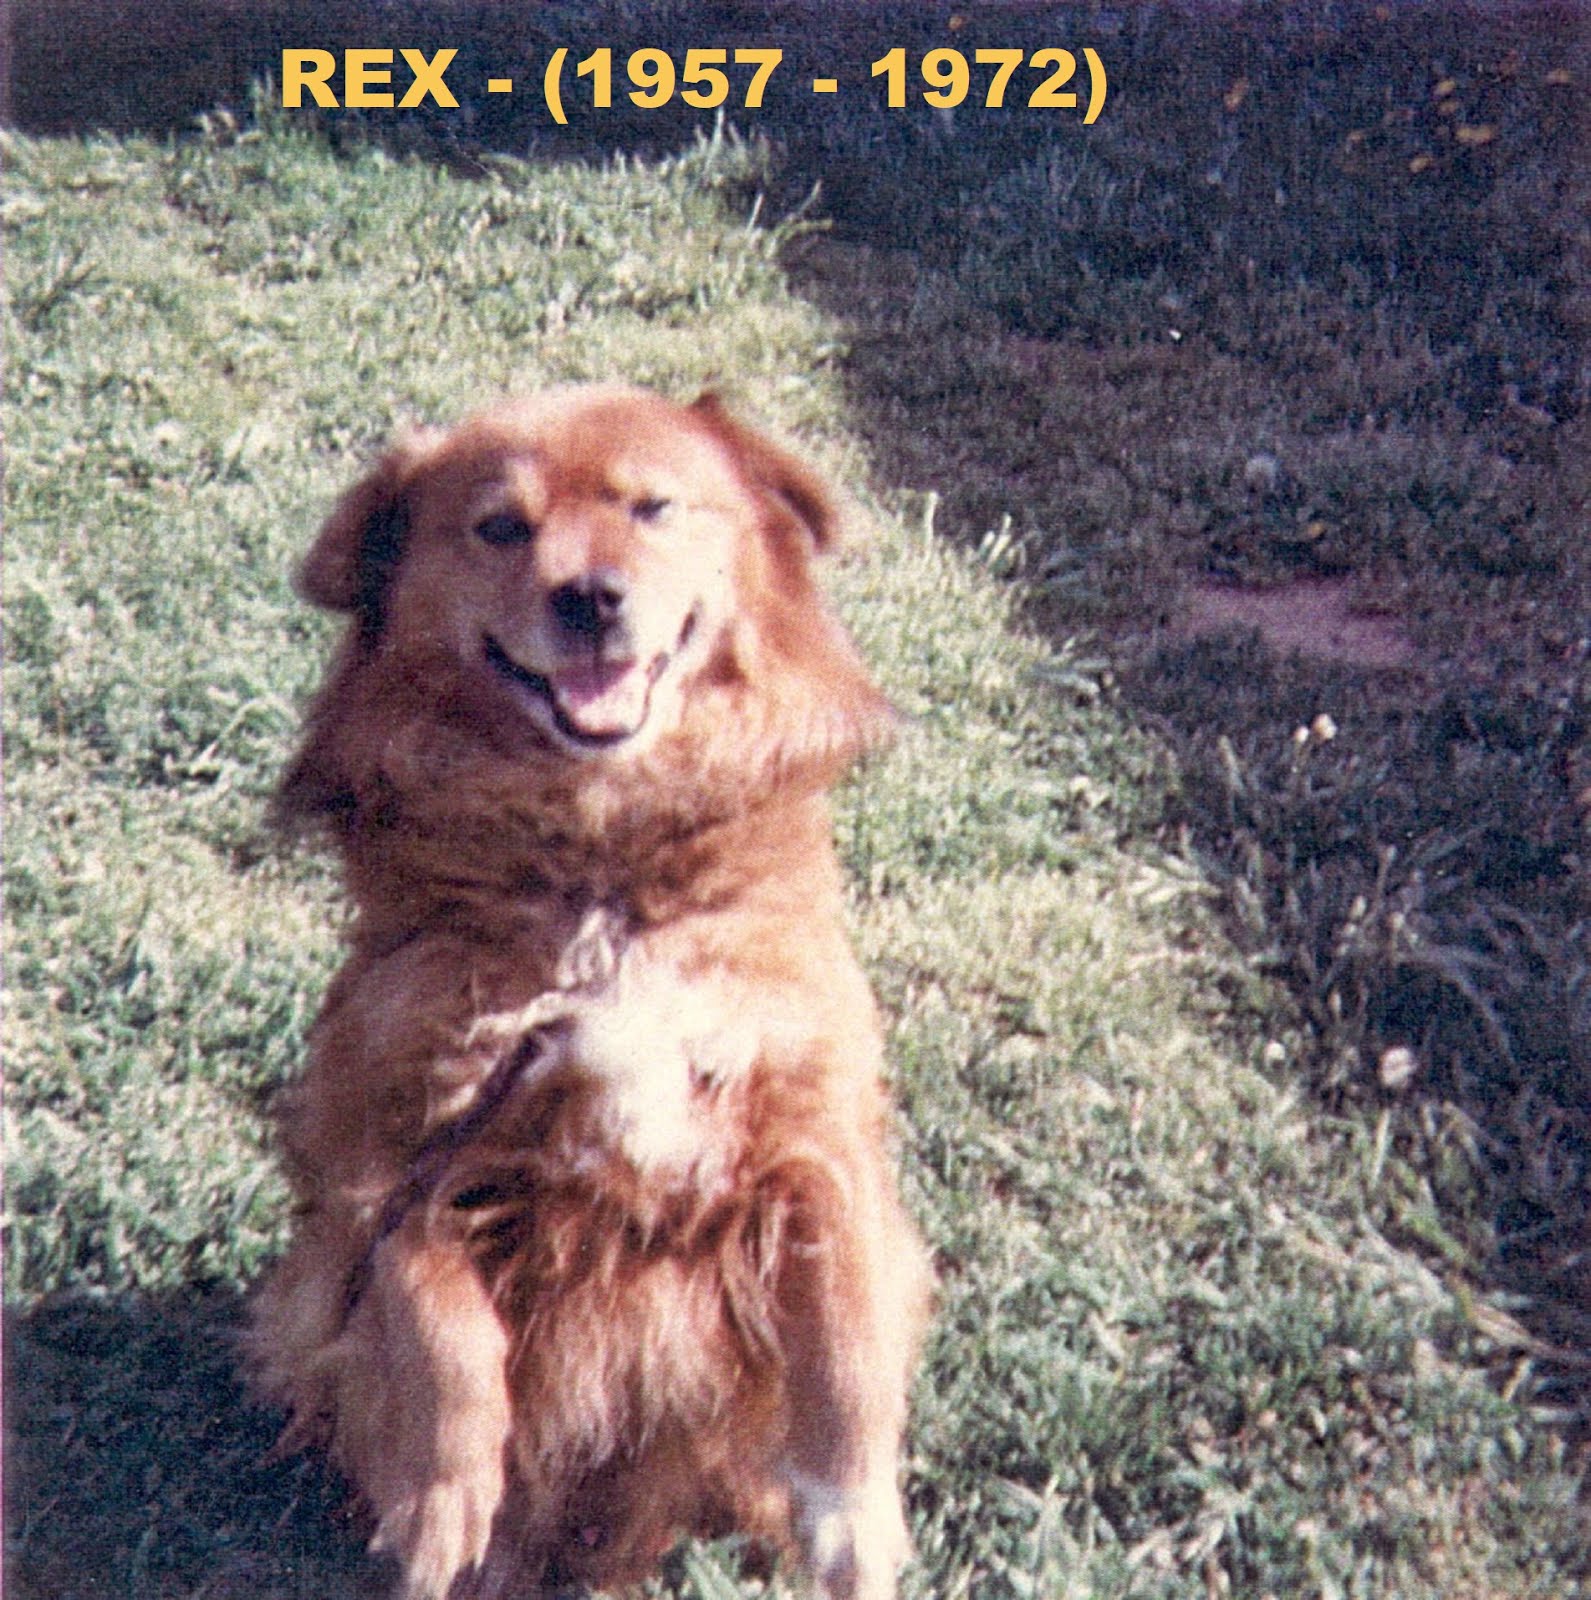 REX - (1957 - 1972)